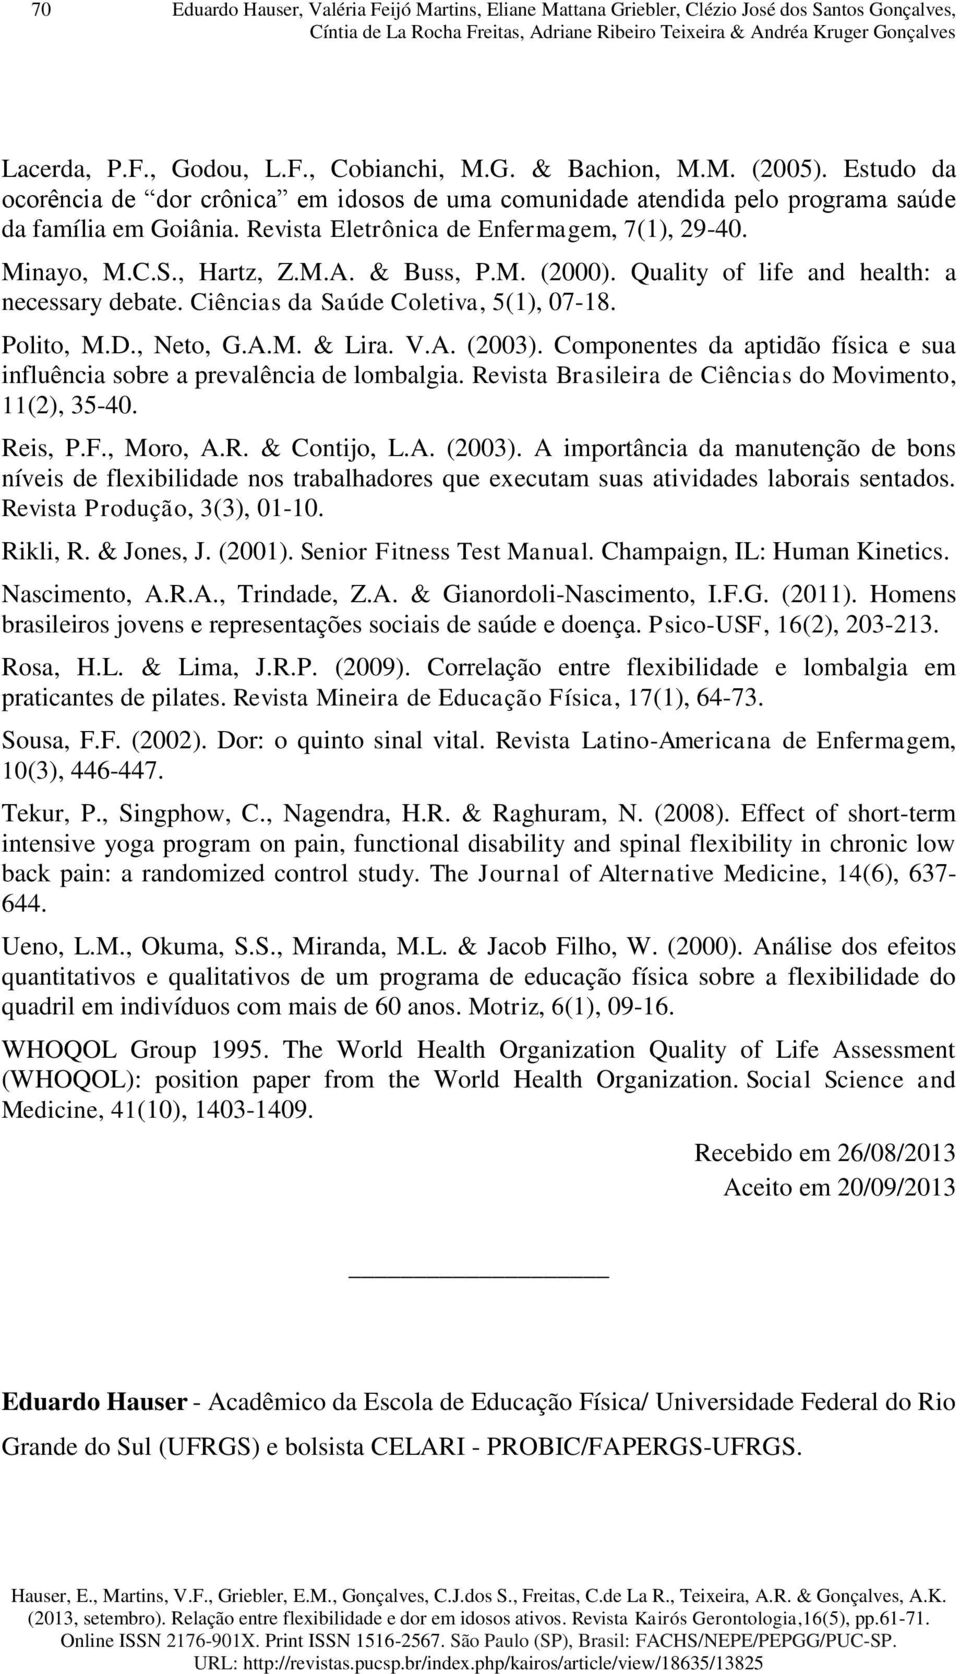 Revista Eletrônica de Enfermagem, 7(1), 29-40. Minayo, M.C.S., Hartz, Z.M.A. & Buss, P.M. (2000). Quality of life and health: a necessary debate. Ciências da Saúde Coletiva, 5(1), 07-18. Polito, M.D.